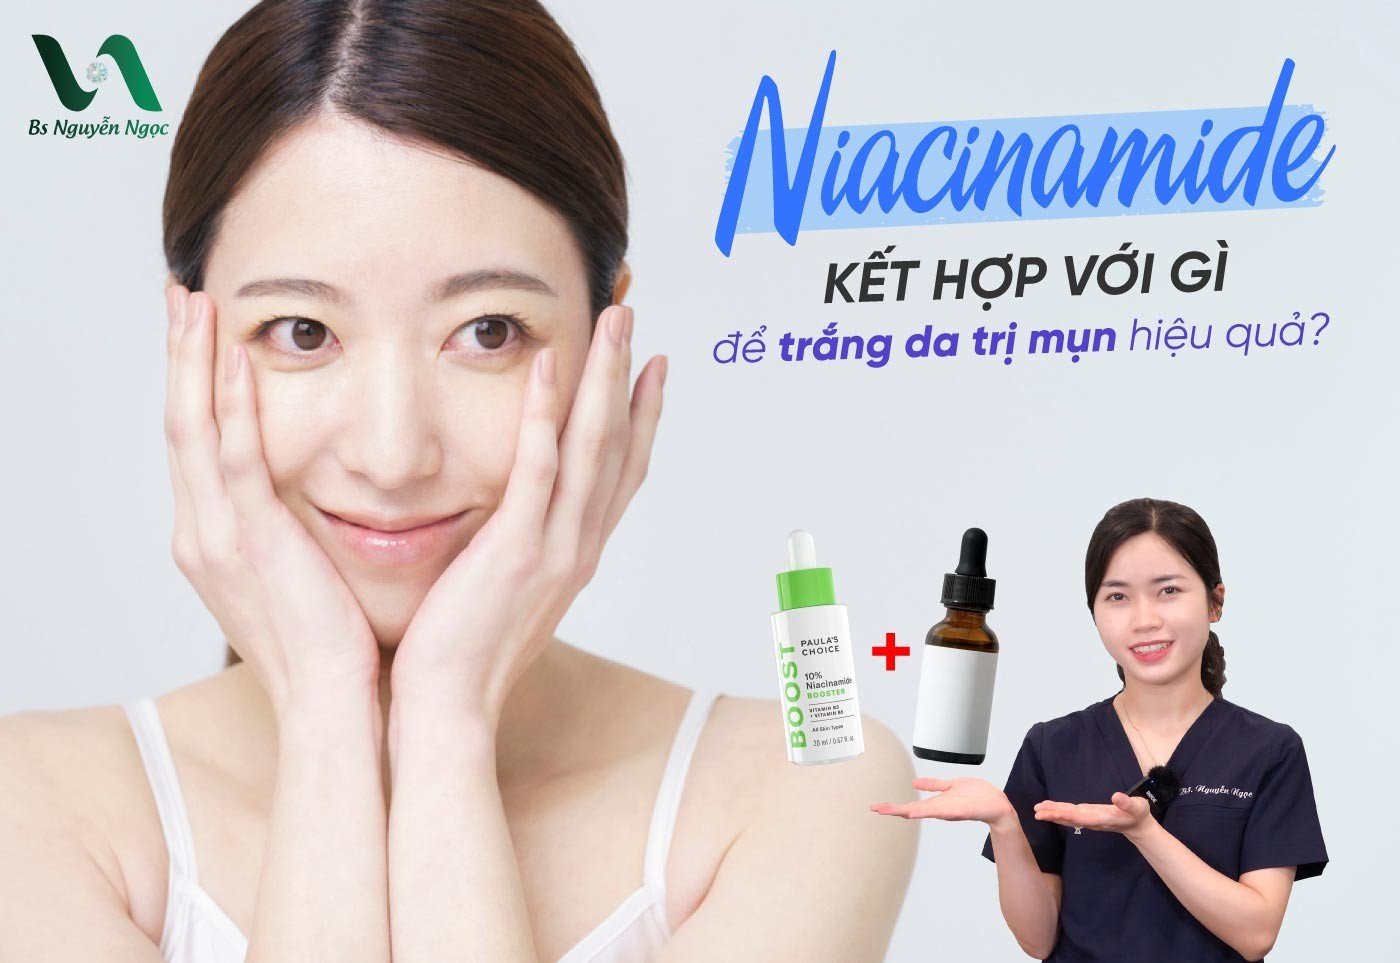 Niacinamide kết hợp với gì để trắng da trị mụn hiệu quả?